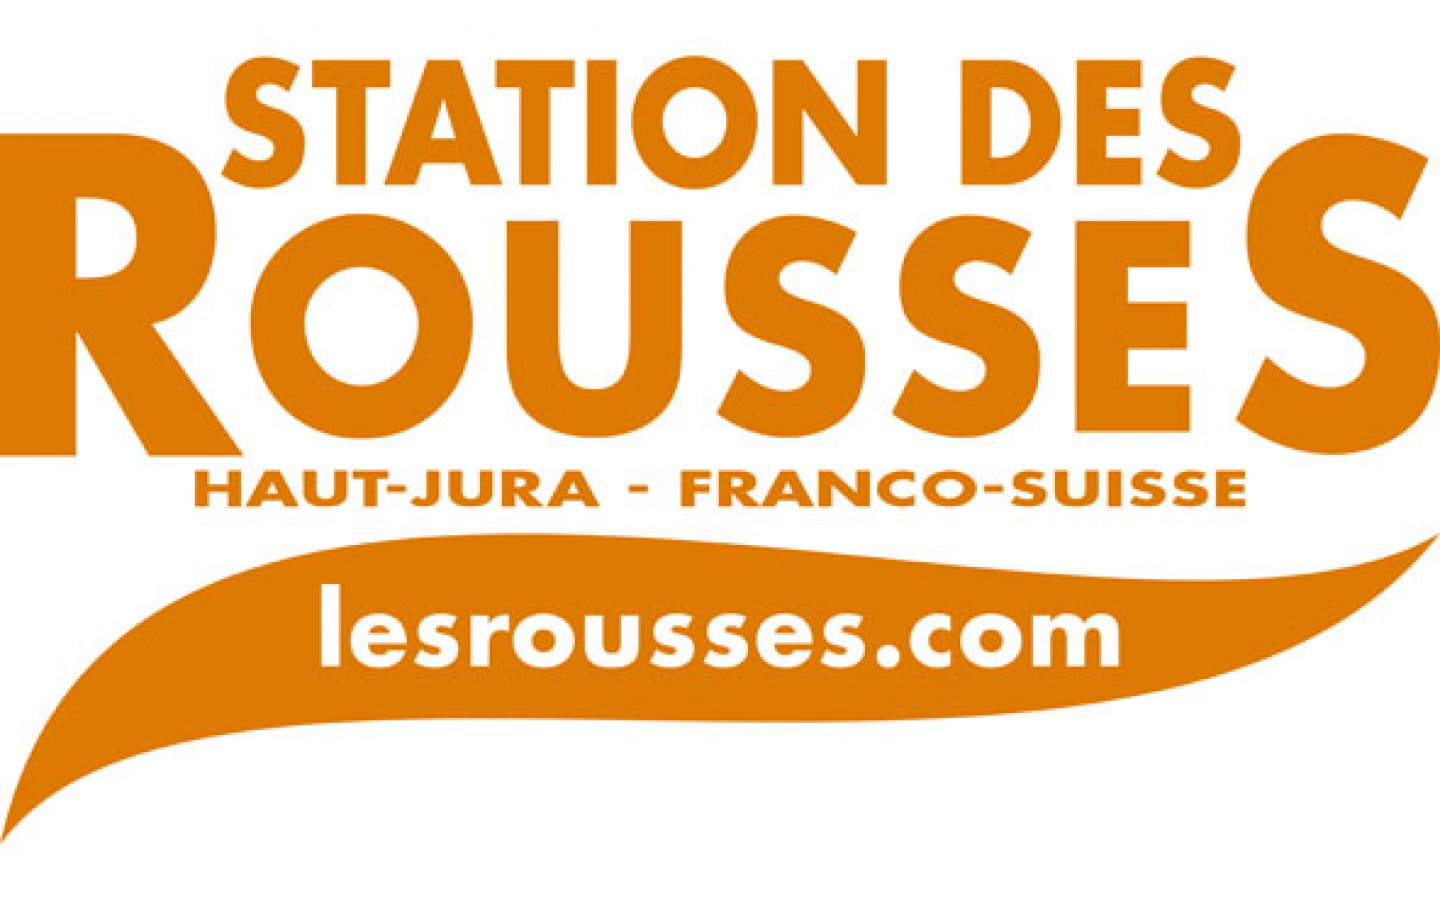 Bureau d'information touristique des Rousses - Office de tourisme de la Station des Rousses